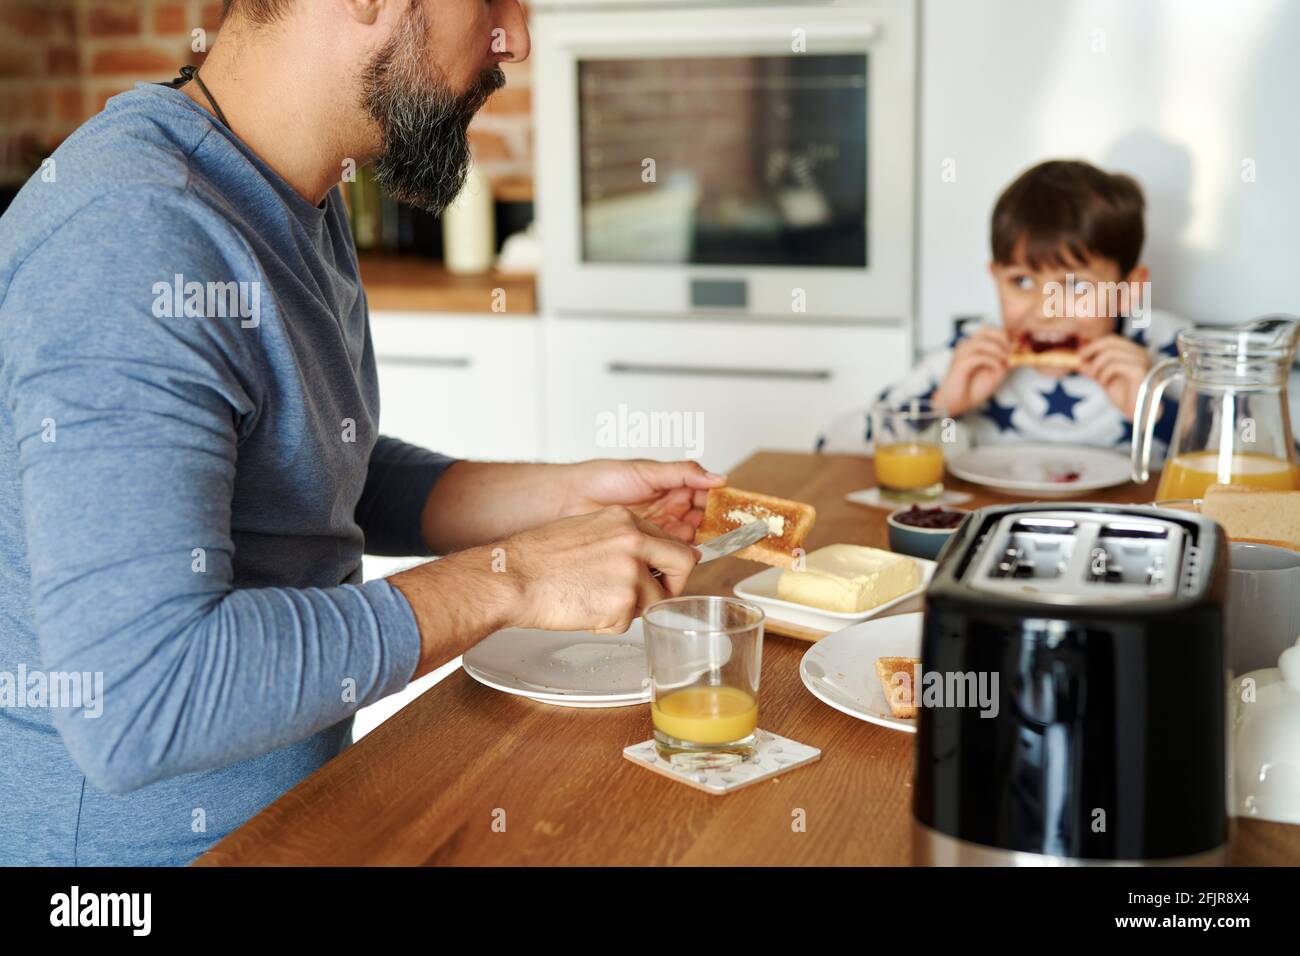 Cerca de padre e hijo desayunando juntos Foto de stock